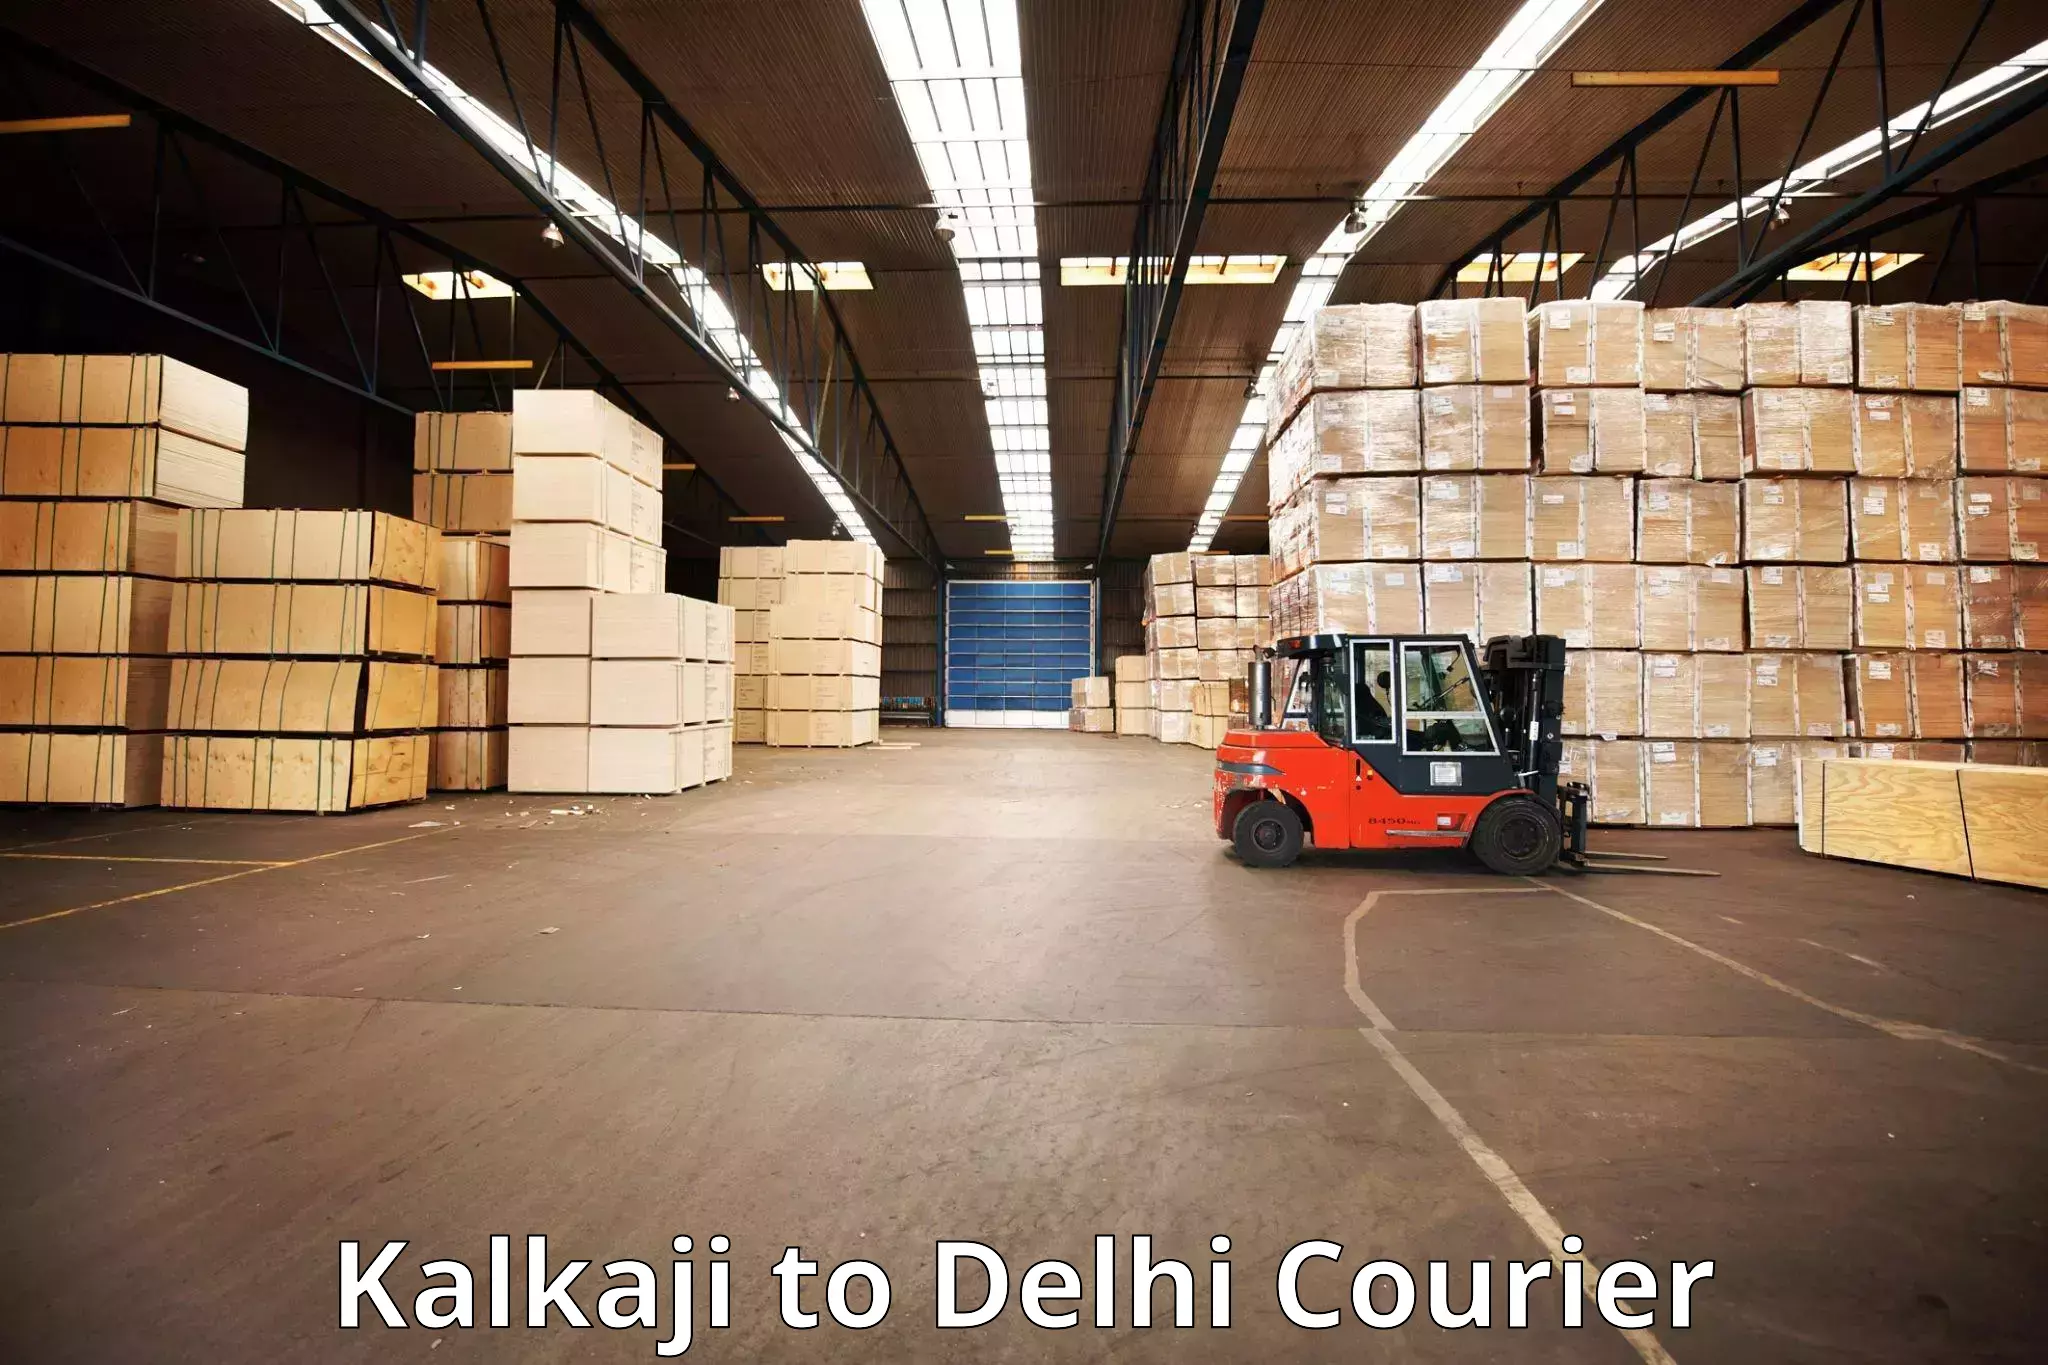 Luggage delivery app Kalkaji to Delhi